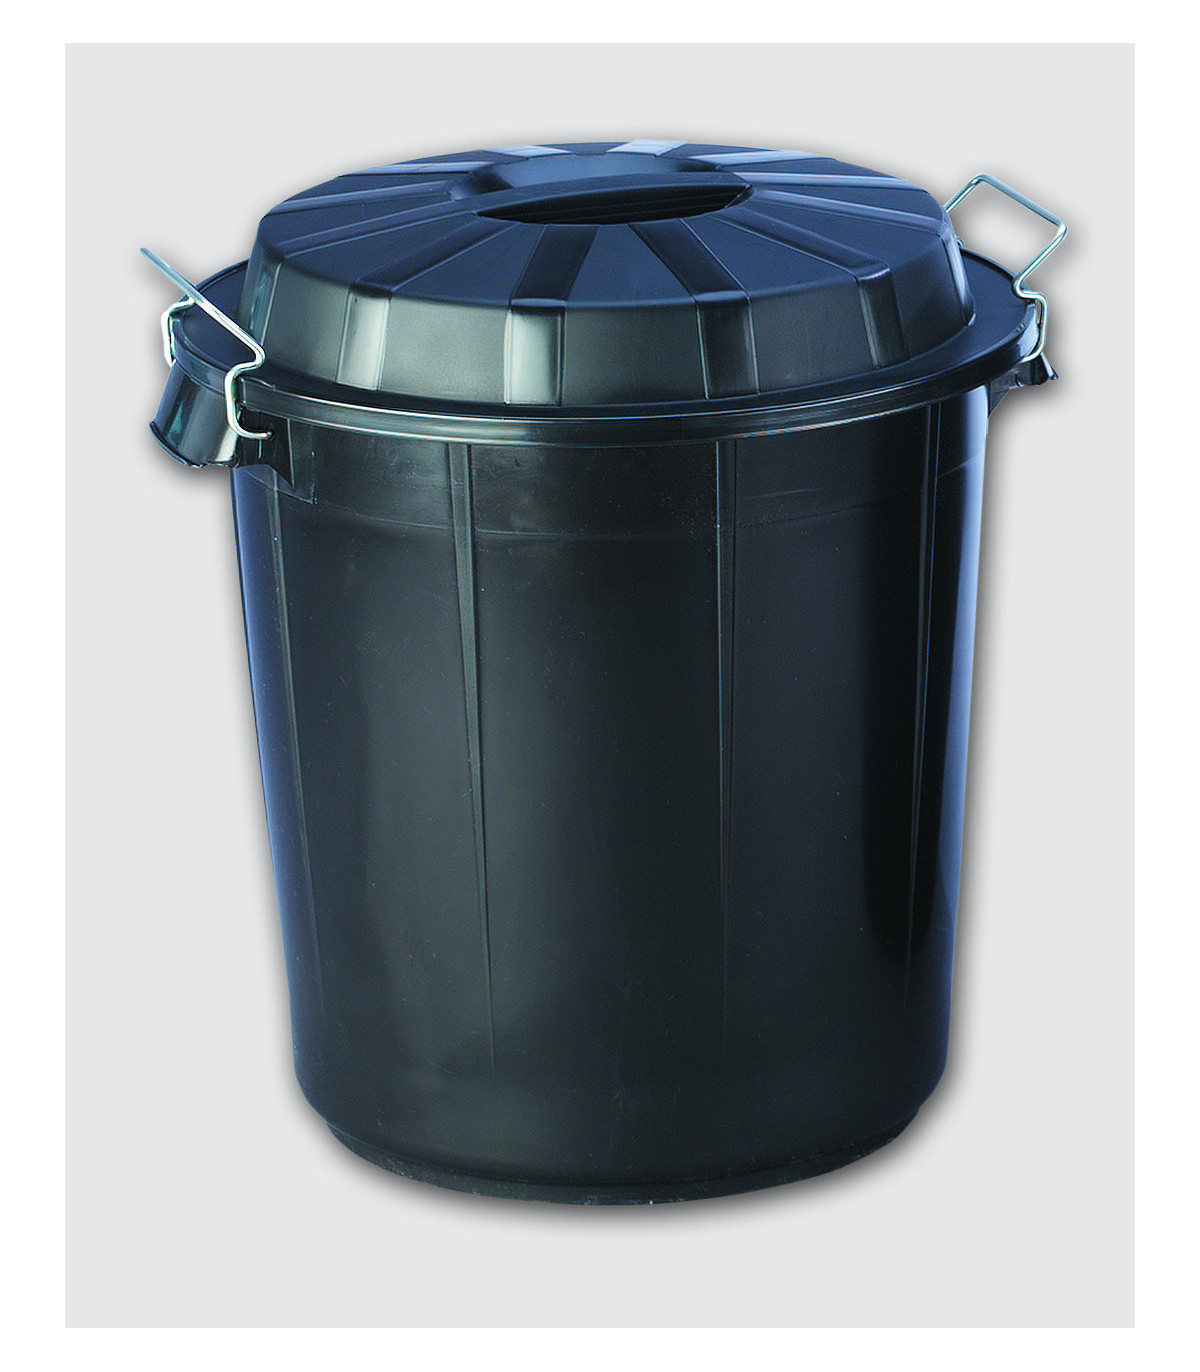 Cubo de basura industrial de 50 litros color negro F13250 DENOX- FAMESA  skrc, comprar online